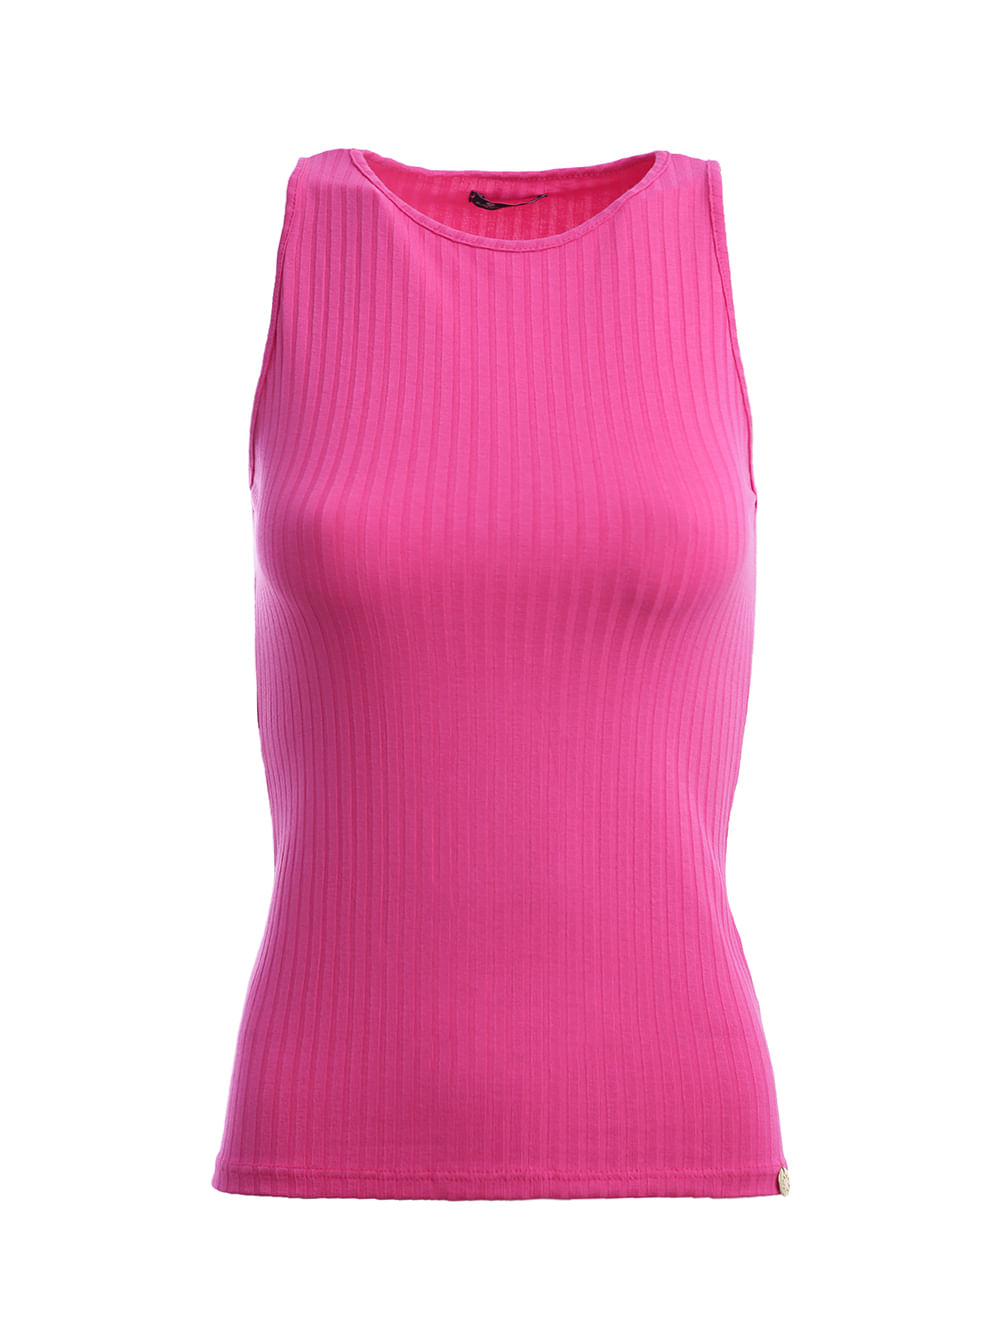 Camisa com Amarração Autentique Plus Size Feminina Rosa Pink - Lojas Pompéia